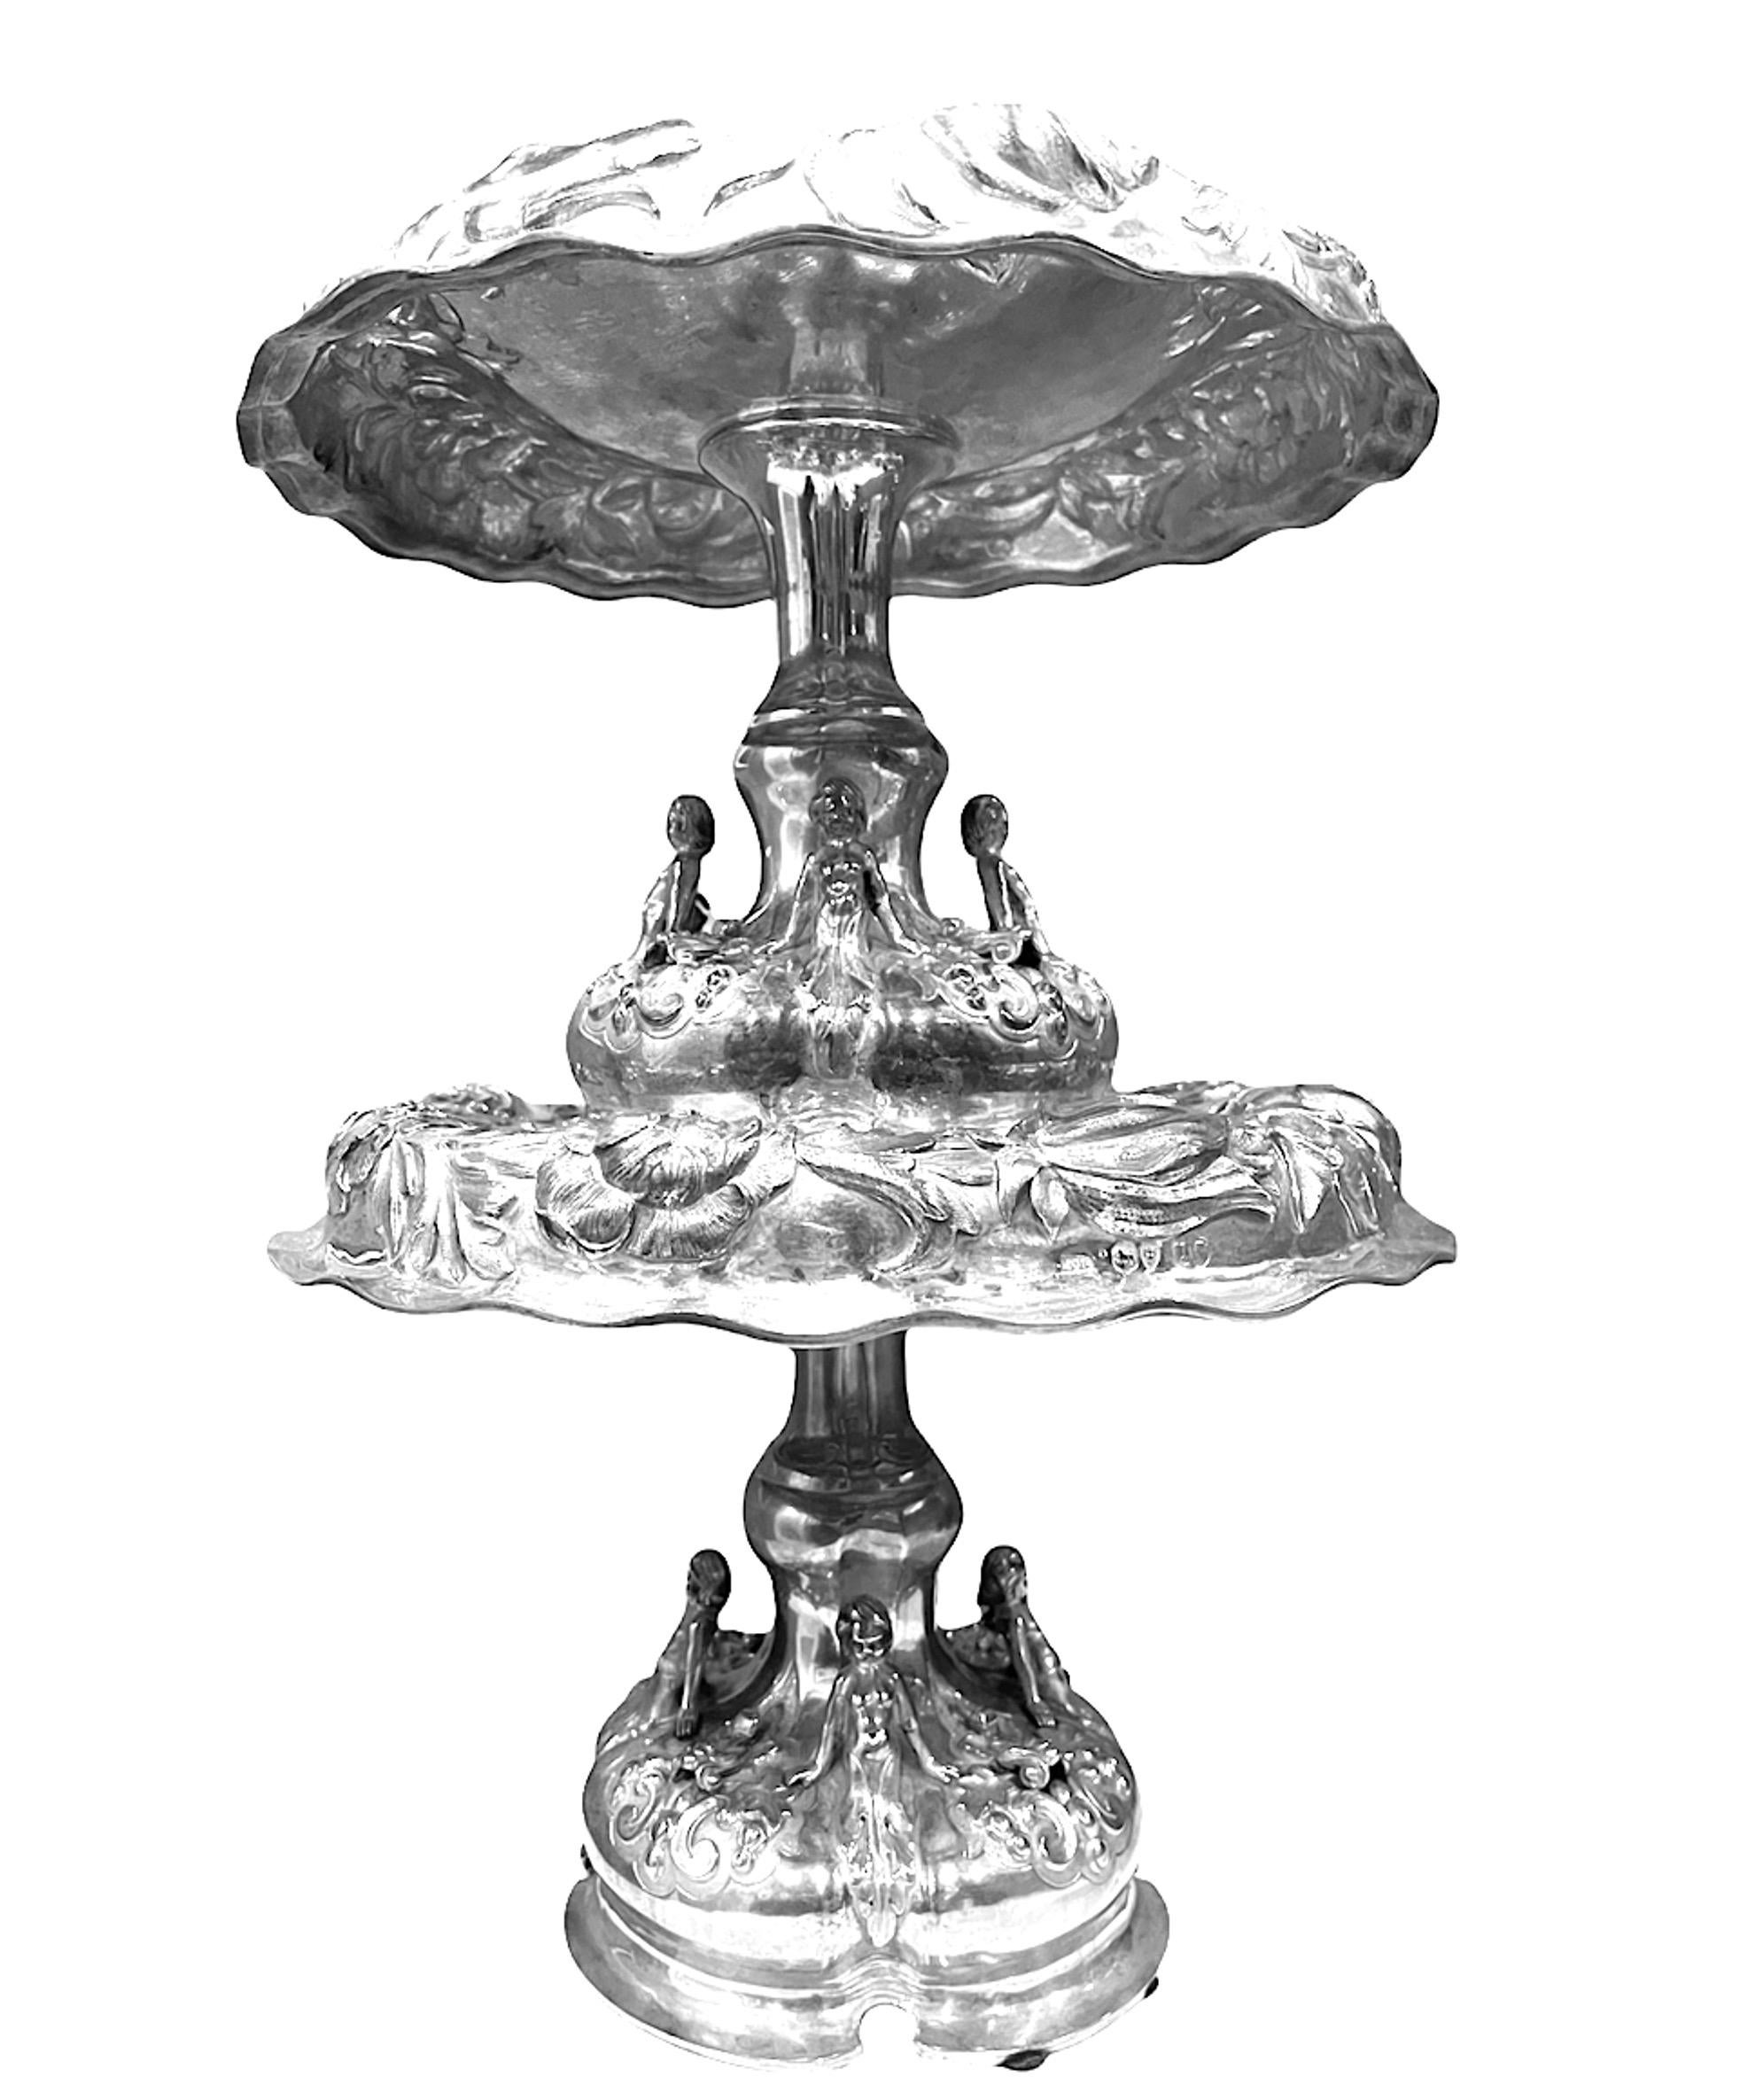 Ein Paar englische viktorianische Silbertazzen des 19. Jahrhunderts (1875) von Alexander MacRae. Diese sind kühn mit Blumen und Blattwerk ziseliert, die Sockel sind mit Halbfiguren und einem mit Wappen gravierten Schild versehen. Beide Stücke sind